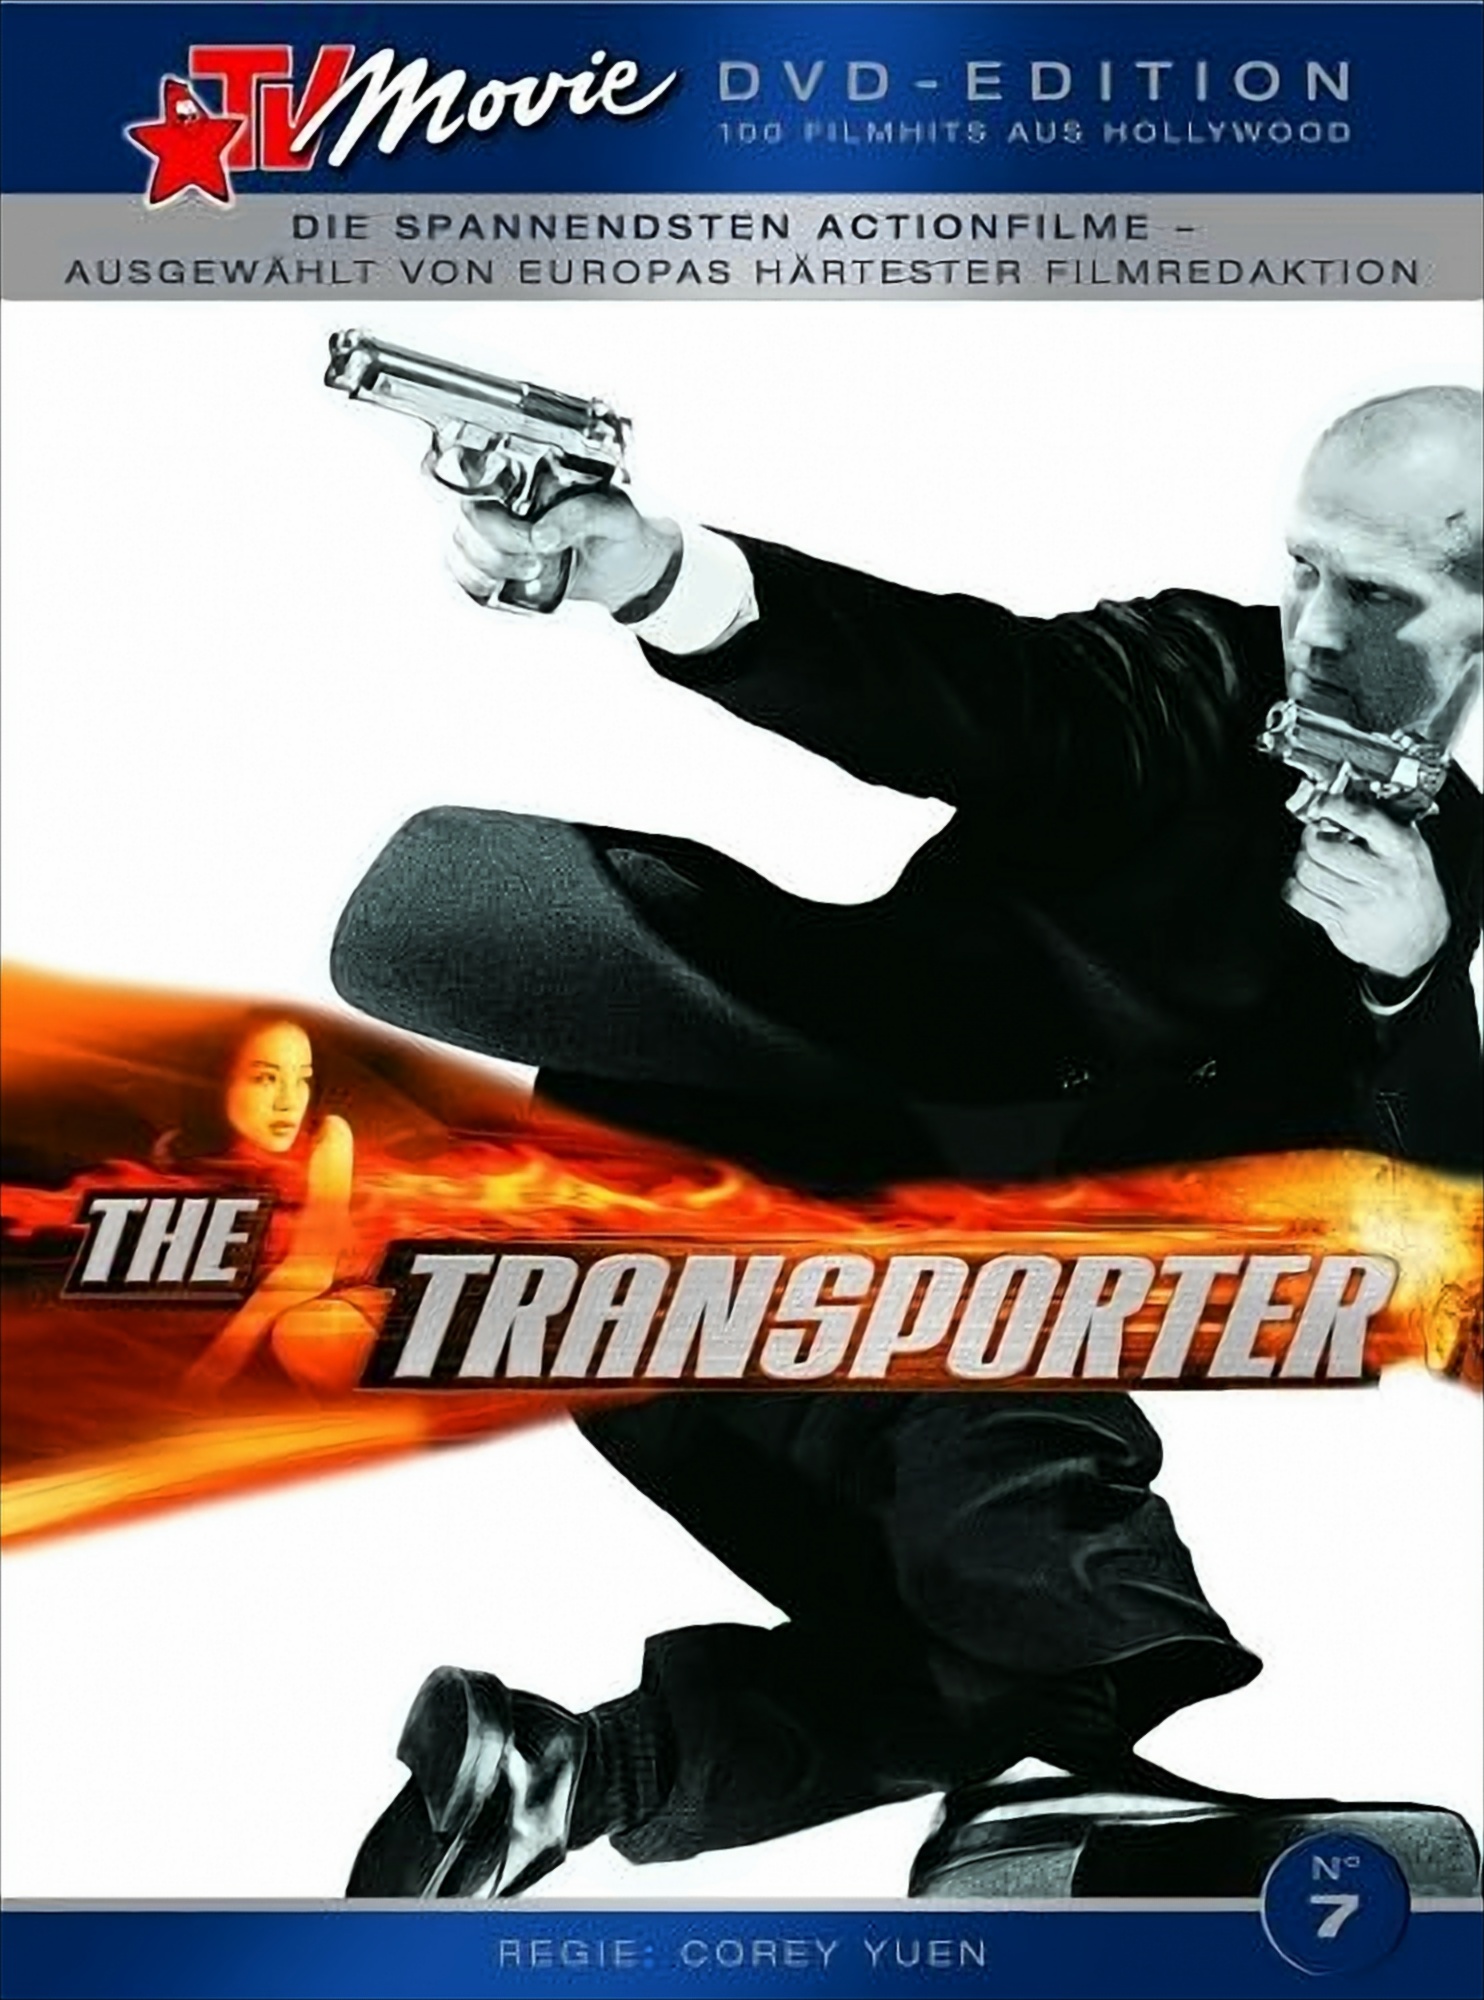 The Transporter - TV Movie Edition von AVU